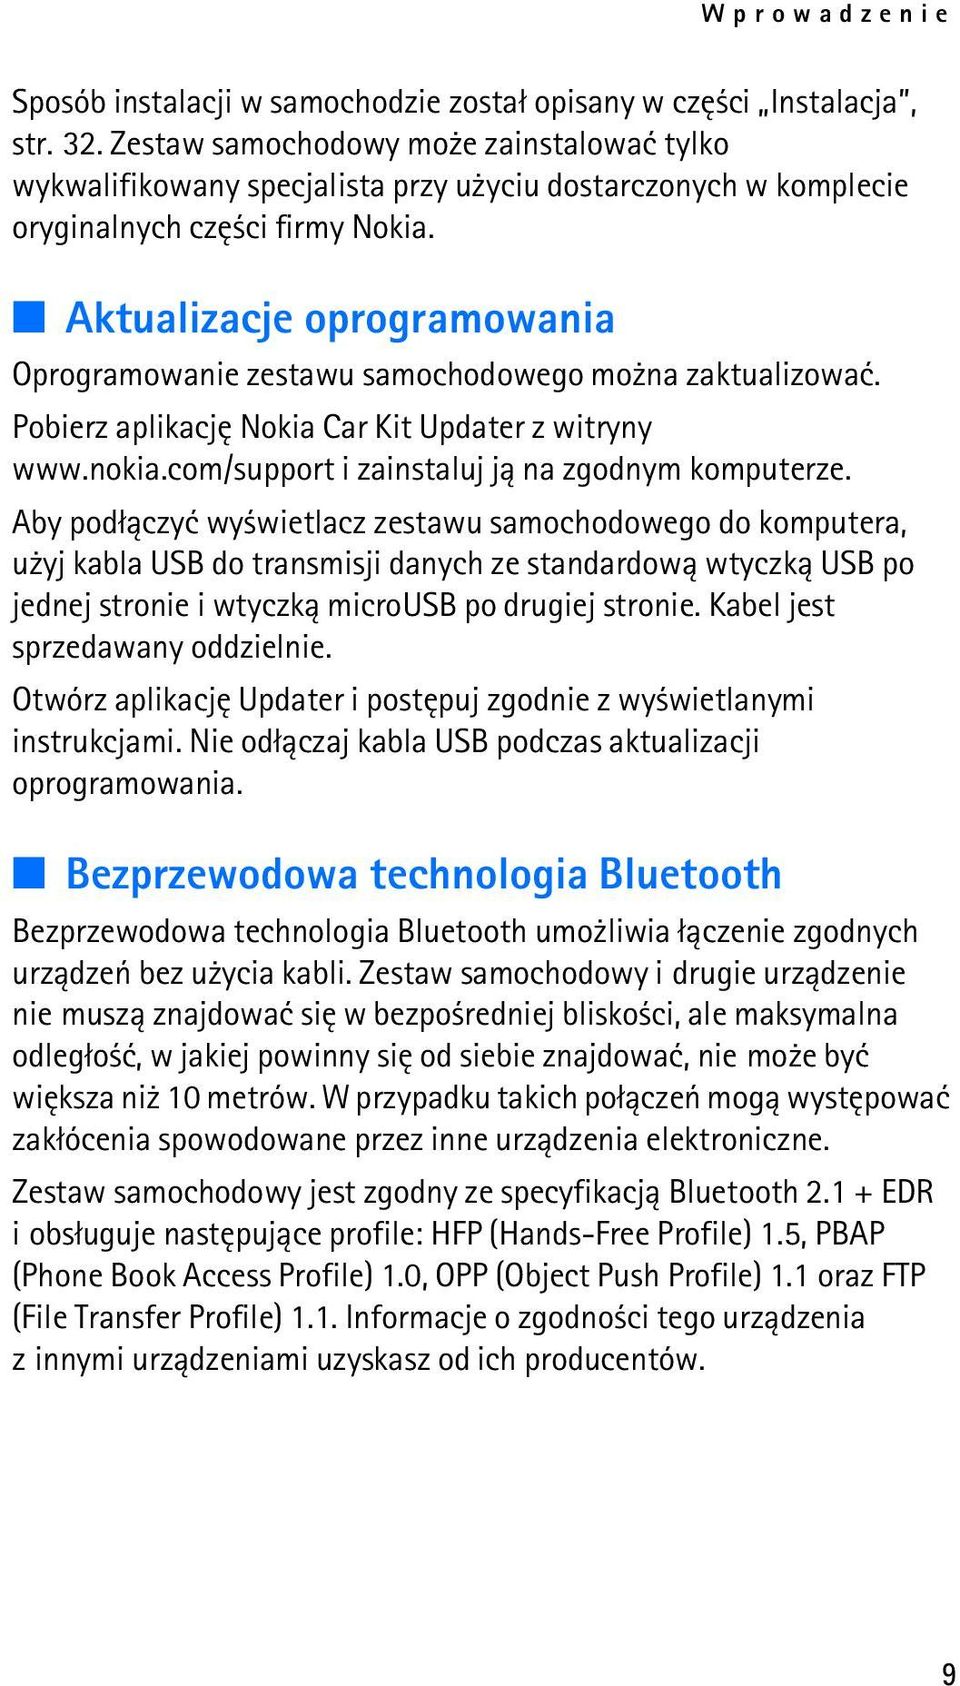 Aktualizacje oprogramowania Oprogramowanie zestawu samochodowego mo na zaktualizowaæ. Pobierz aplikacjê Nokia Car Kit Updater z witryny www.nokia.com/support i zainstaluj j± na zgodnym komputerze.